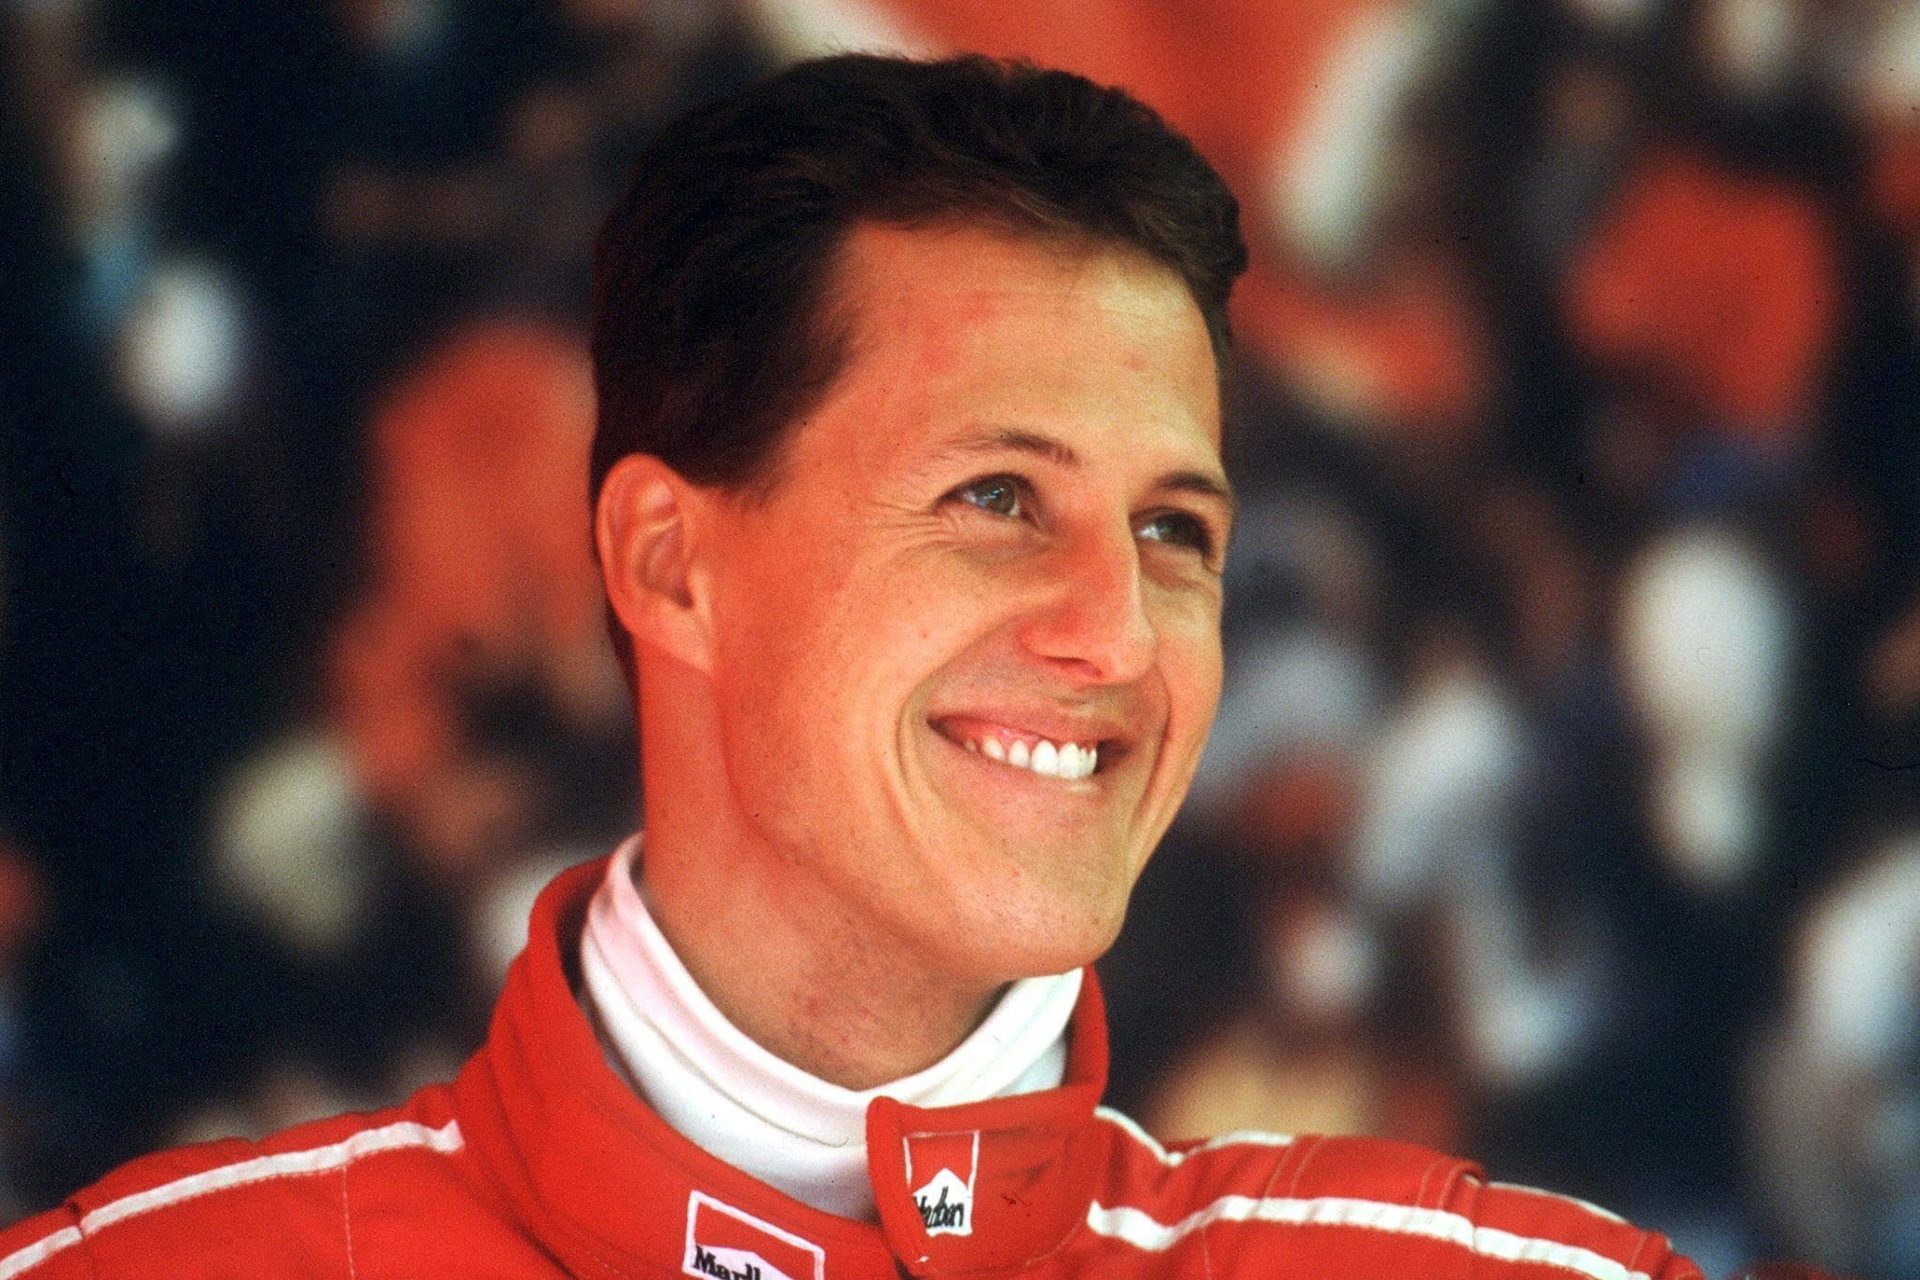 Il mistero di Michael Schumacher: cosa è successo dopo il suo incidente?